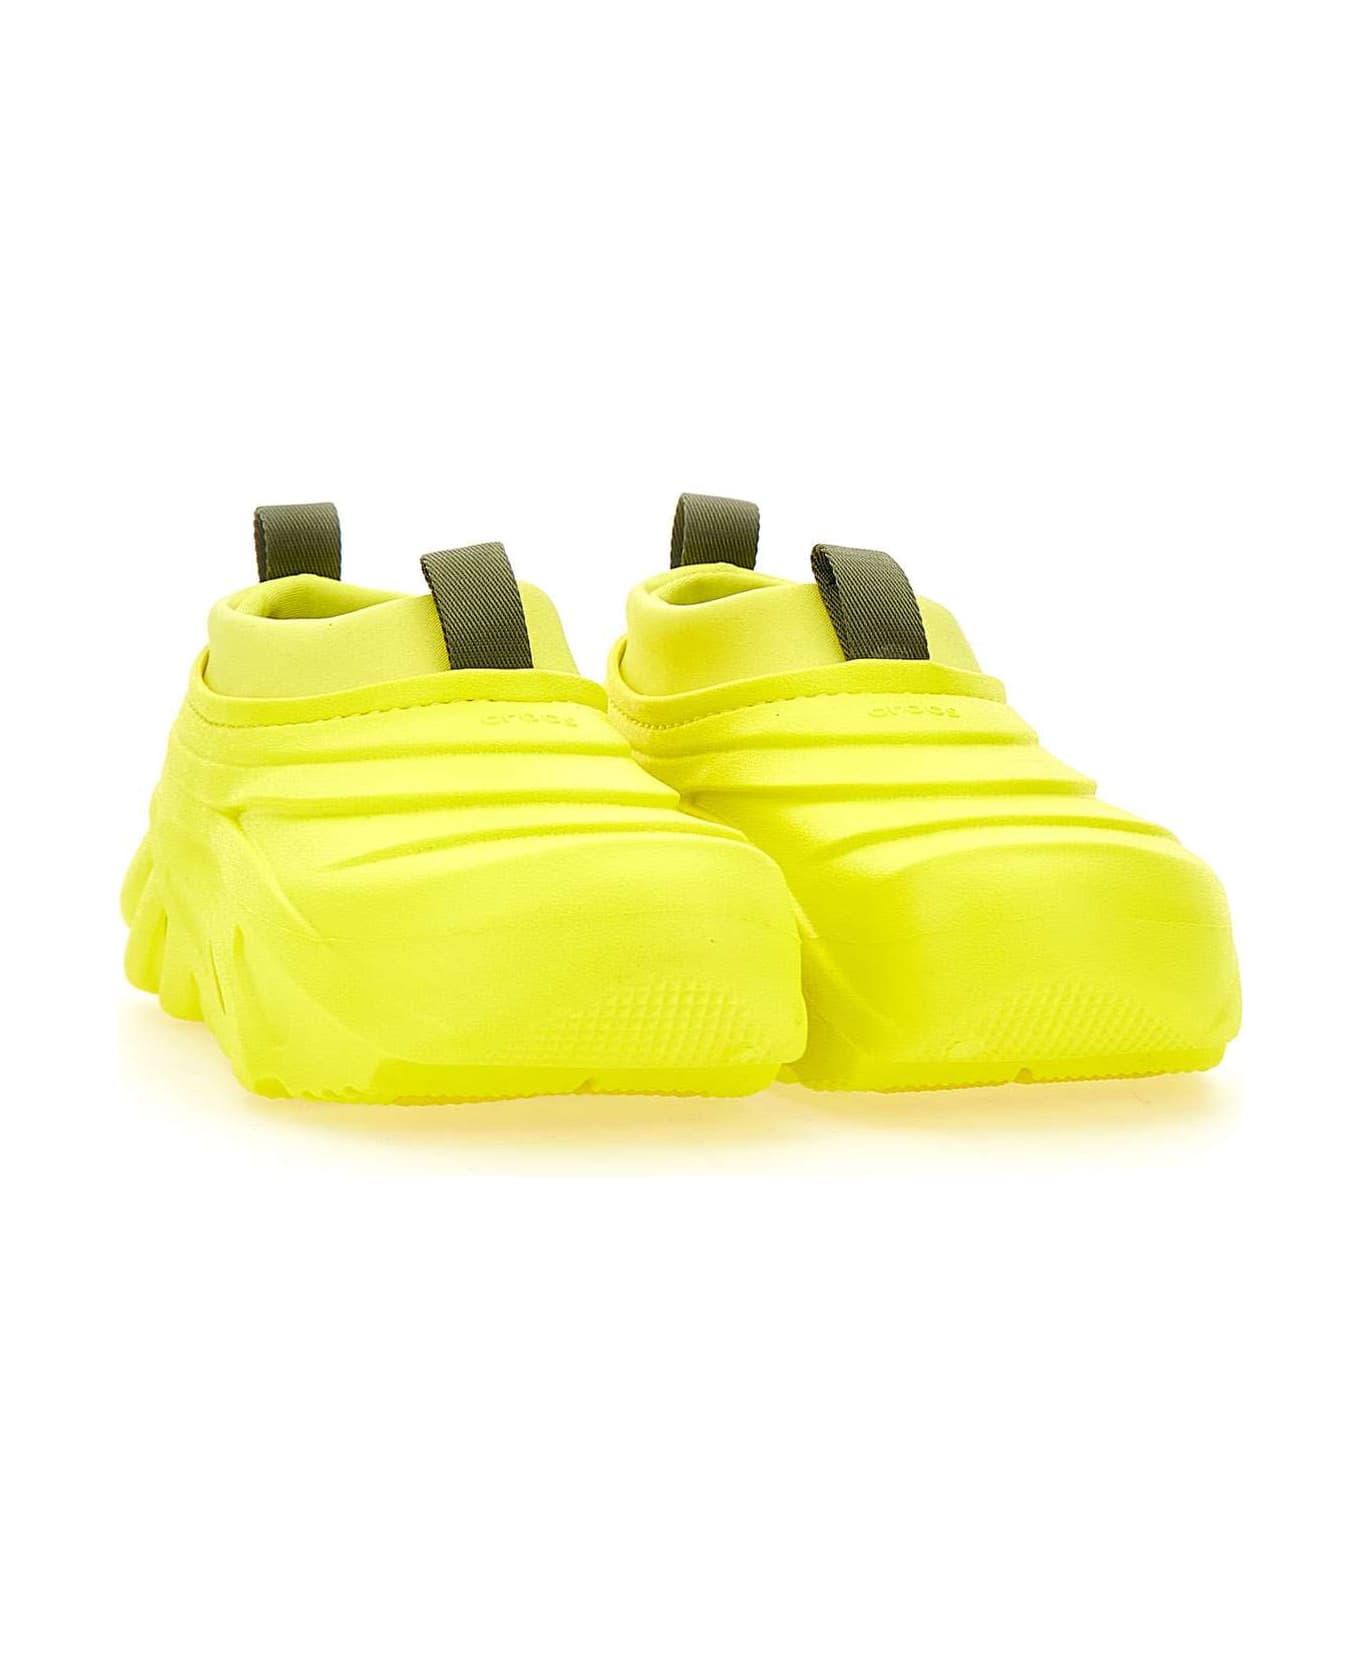 Crocs "echo Storm" Sneakers - YELLOW スニーカー